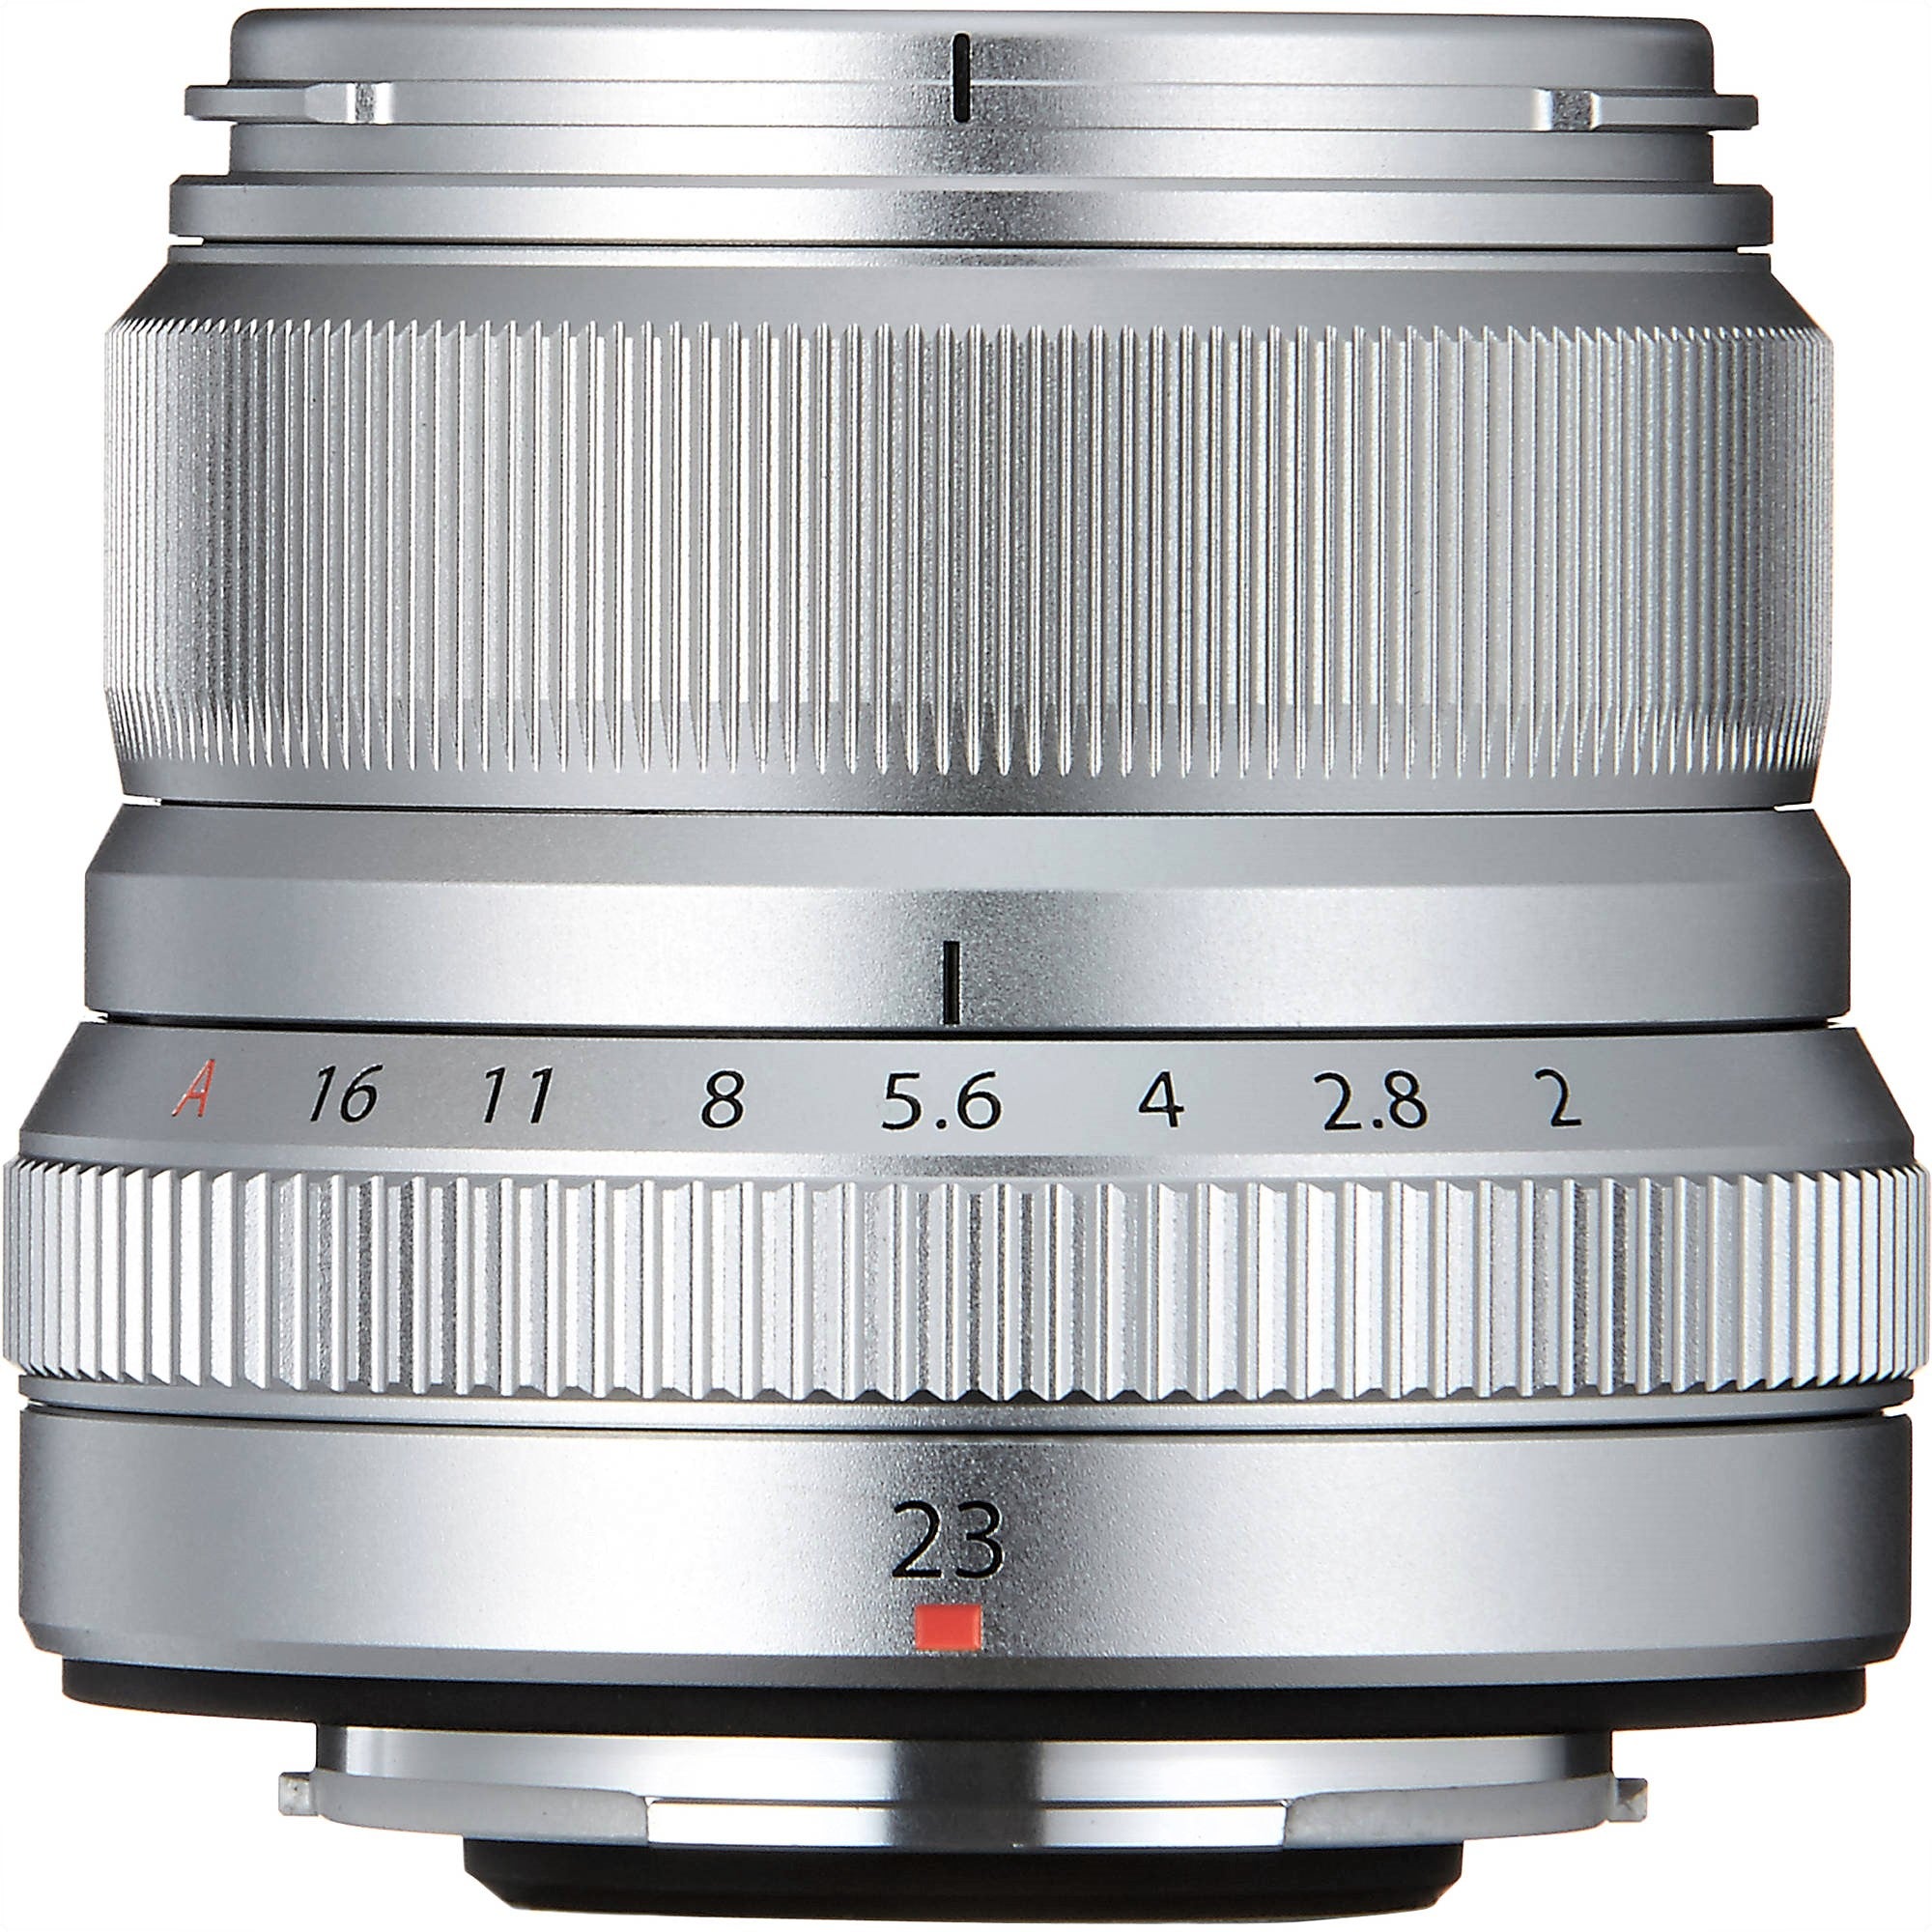 Fujifilm XF 23mm F2 R WR Lens (Black & Silver)